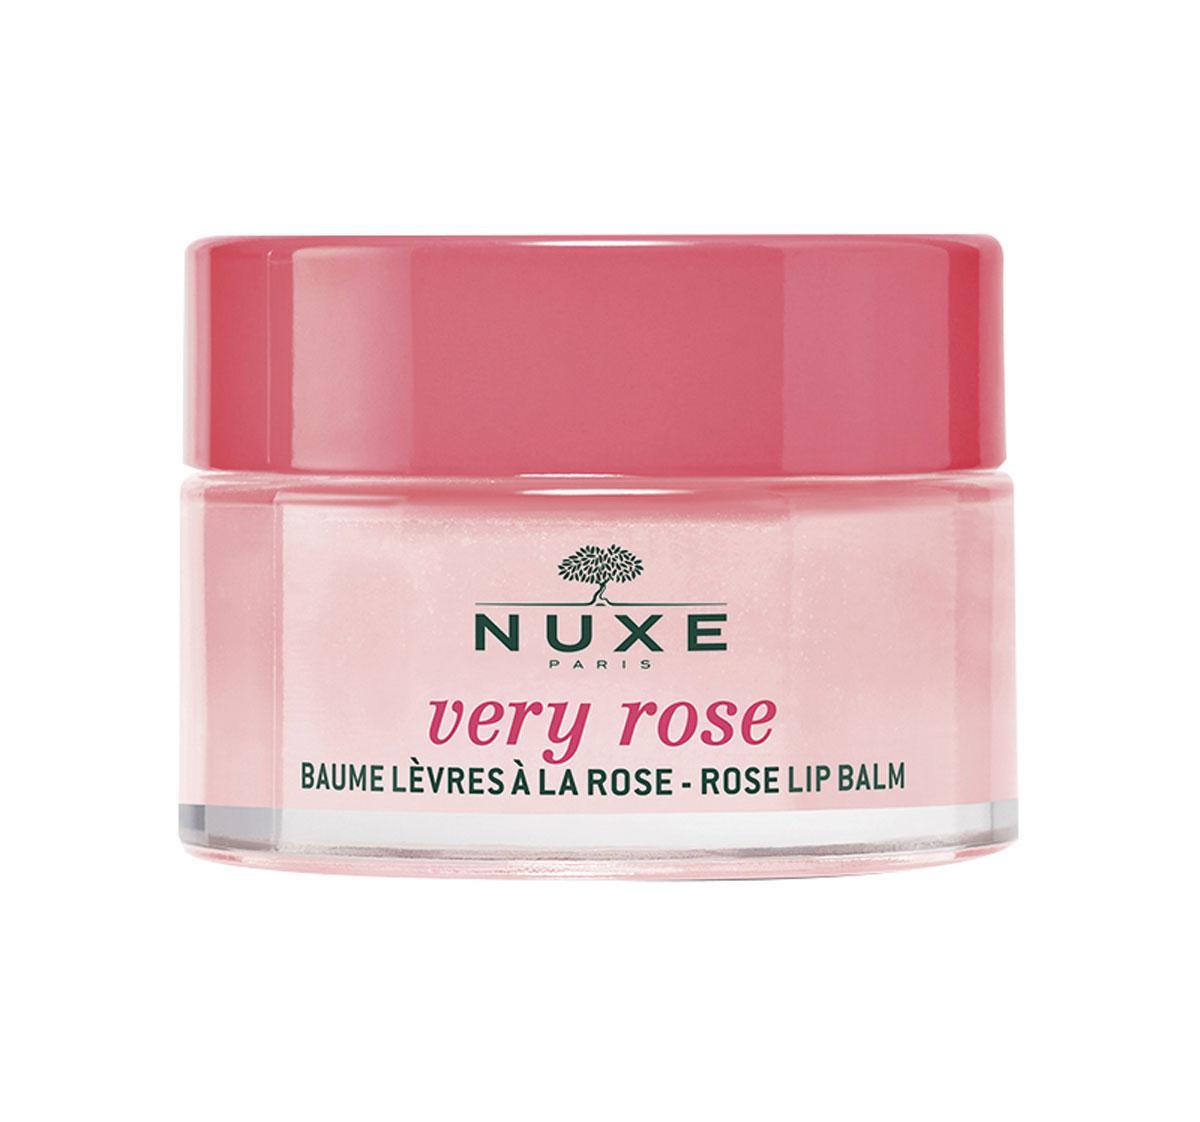 Volle lippen, langdurig comfort en een onweerstaanbaar gekleurde textuur als bonus. Rose Lip Balm, Very Rose van Nuxe, 14,50 euro, in de apotheek en drogisterij.